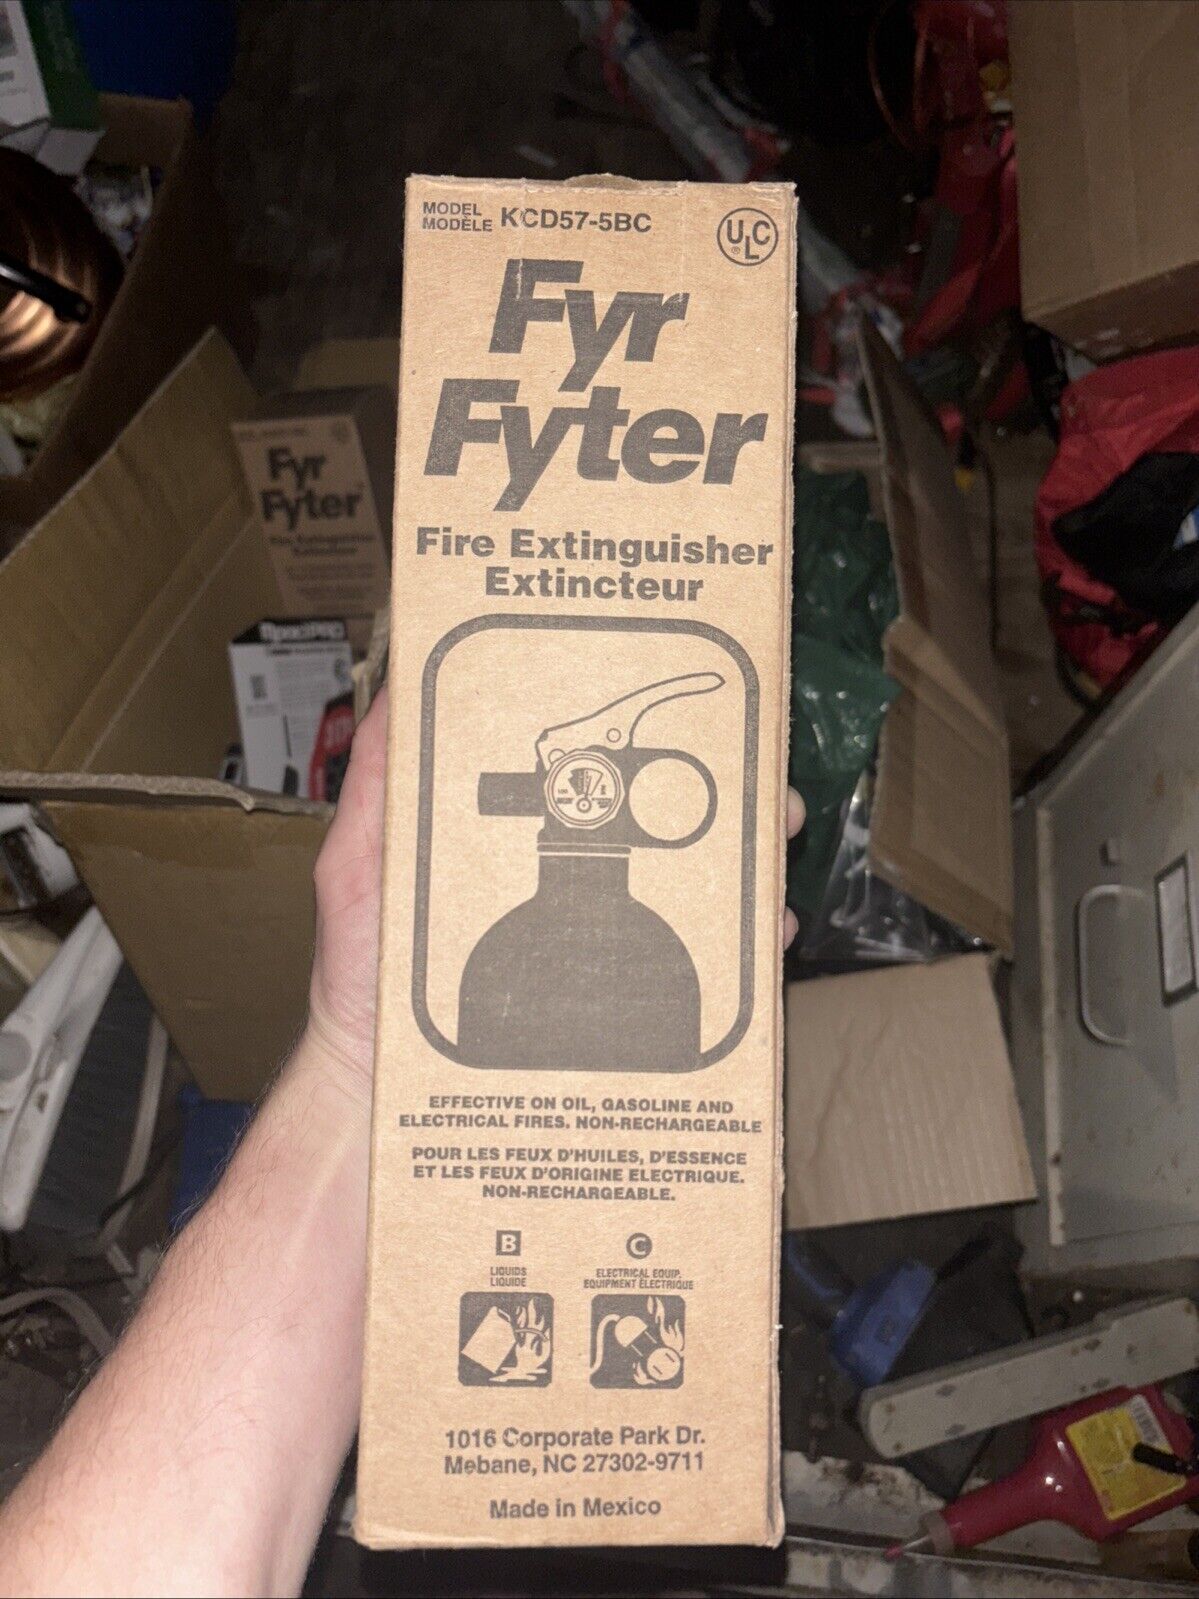 Fyr Fyter Fire Extinguisher Model KCD57-5BC